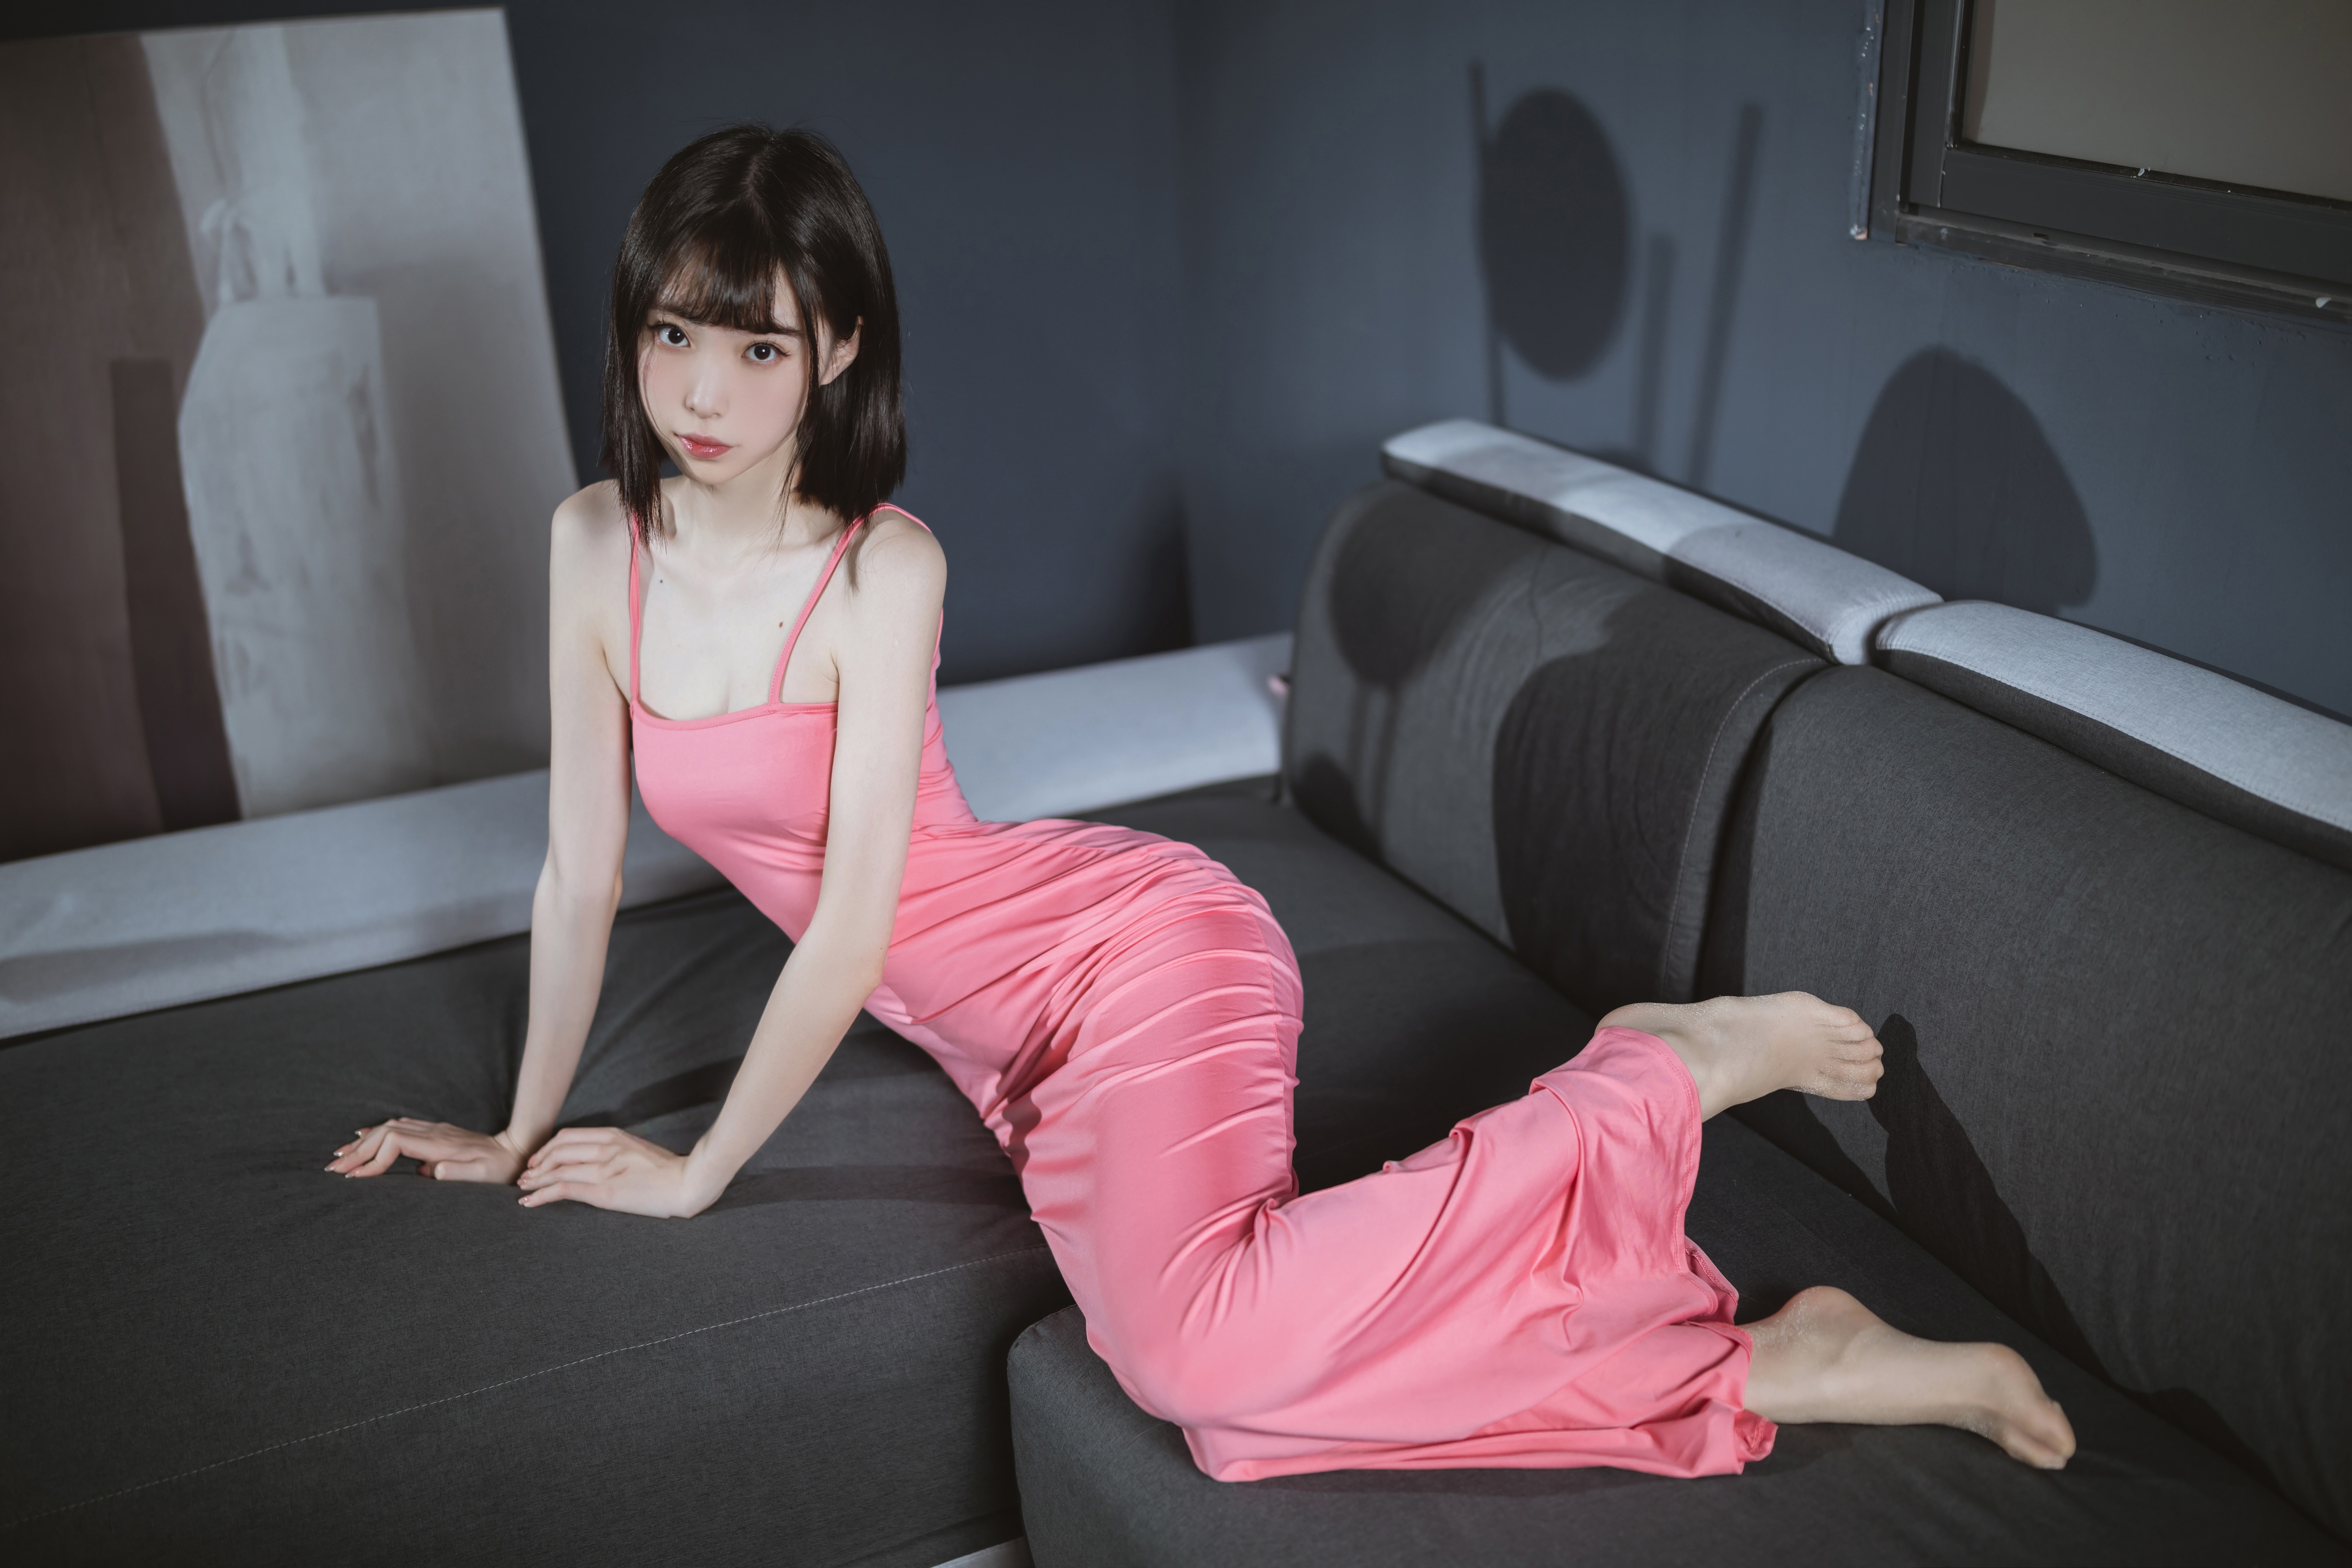 Asian Pink Dress Women 6720x4480